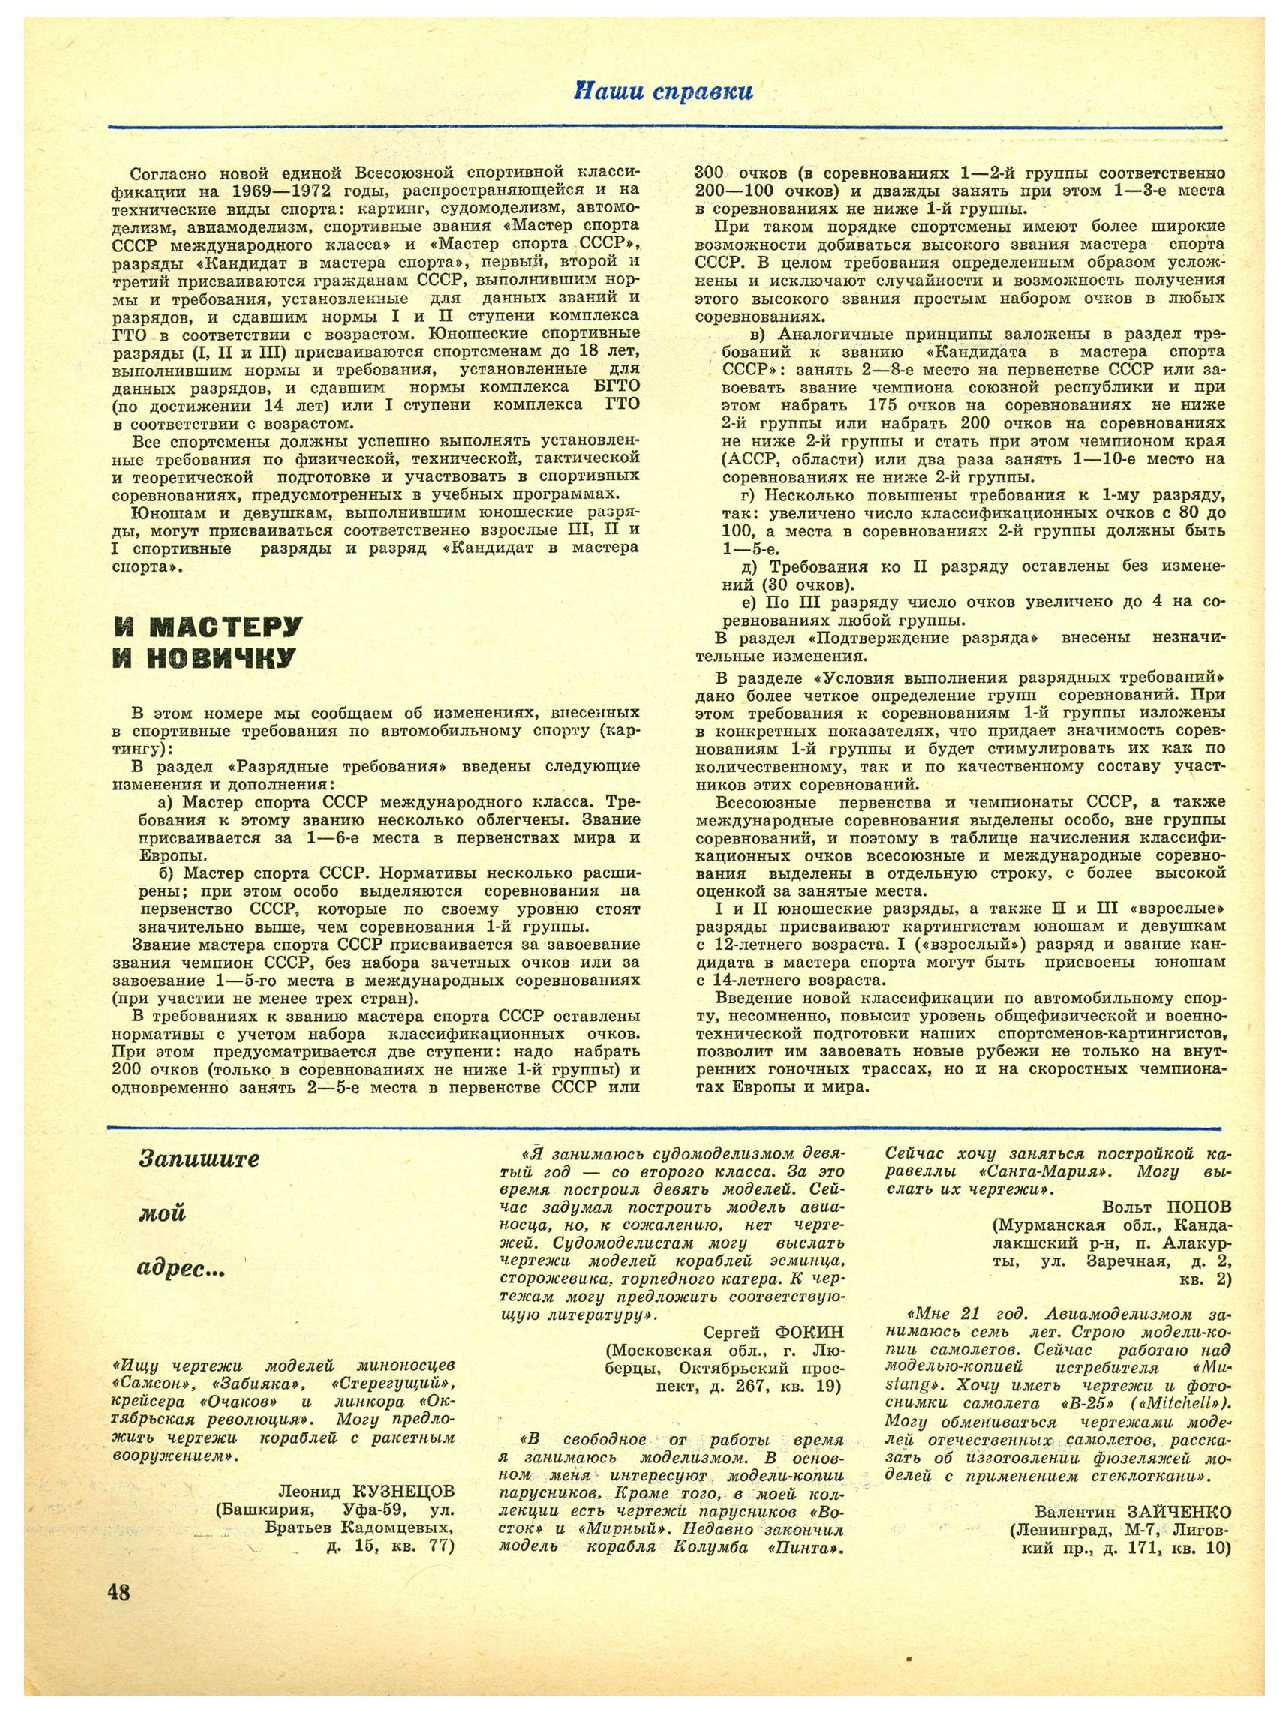 МК 1, 1970, 48 c.